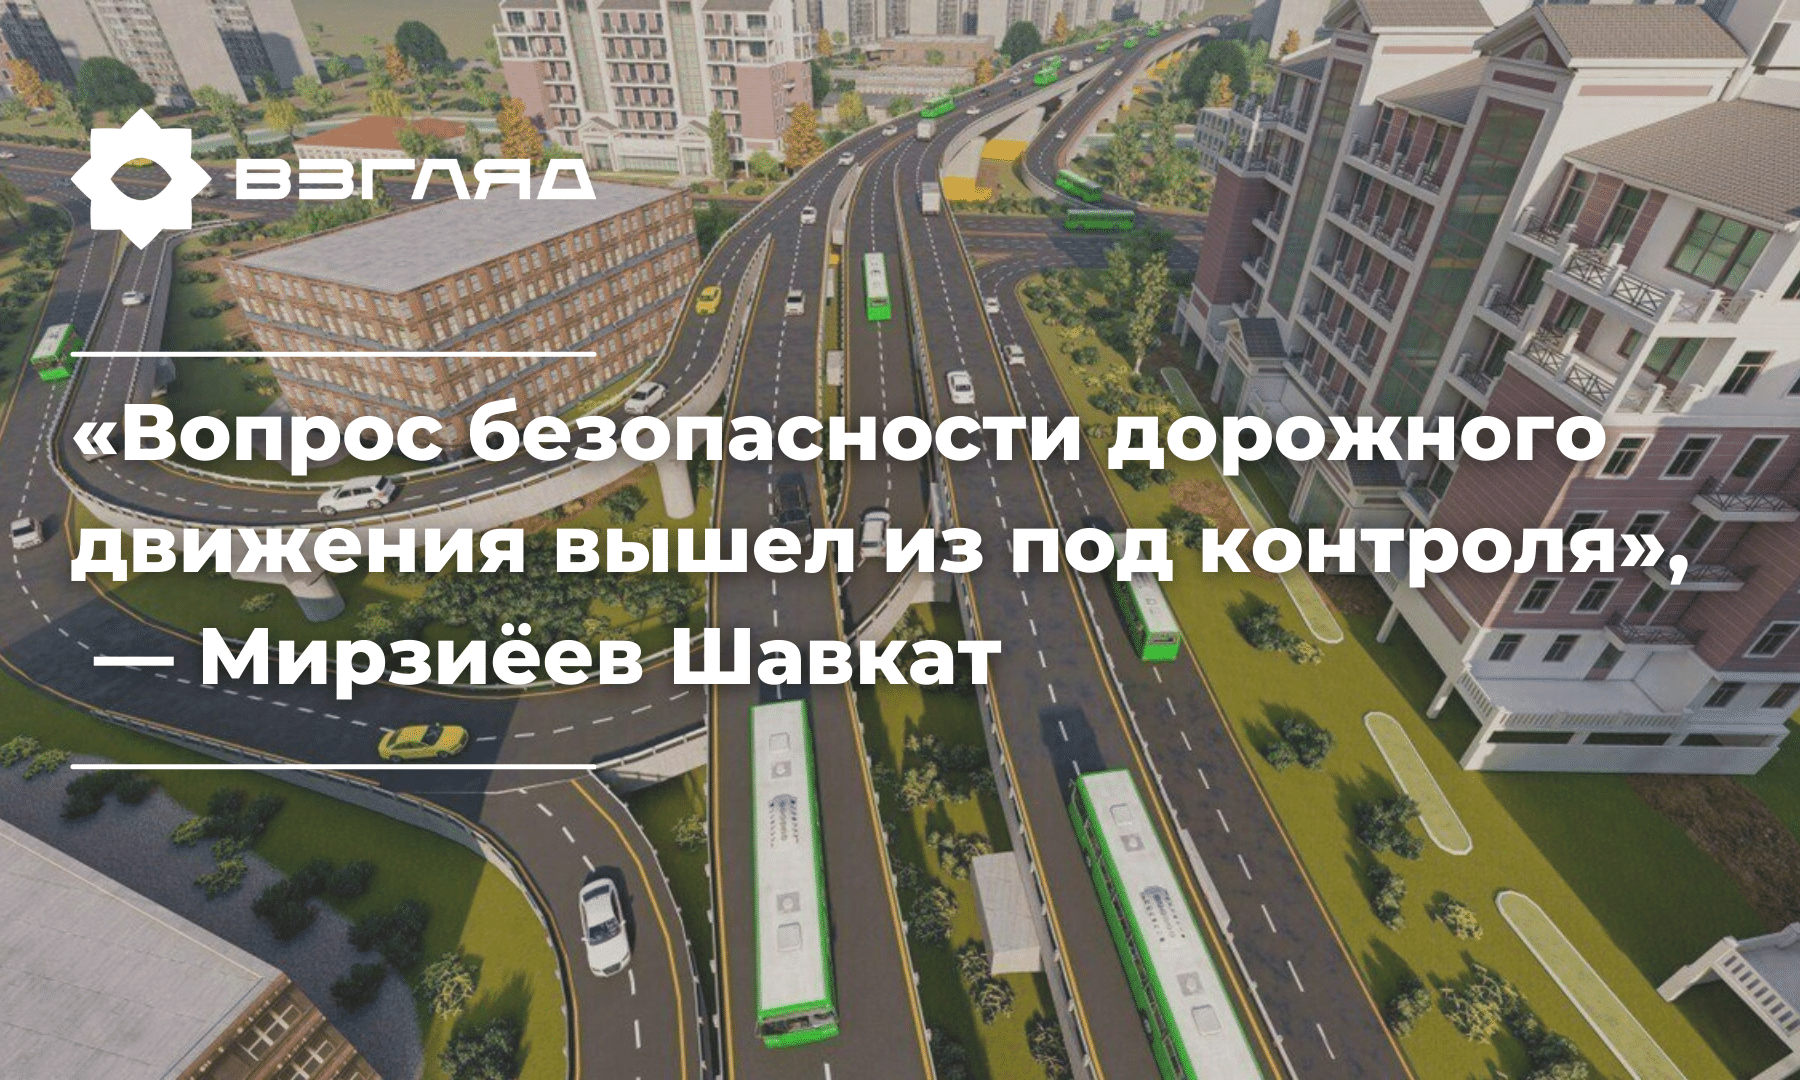 «Тише едешь — дальше будешь»: масштабная реформа транспортной сферы Узбекистана